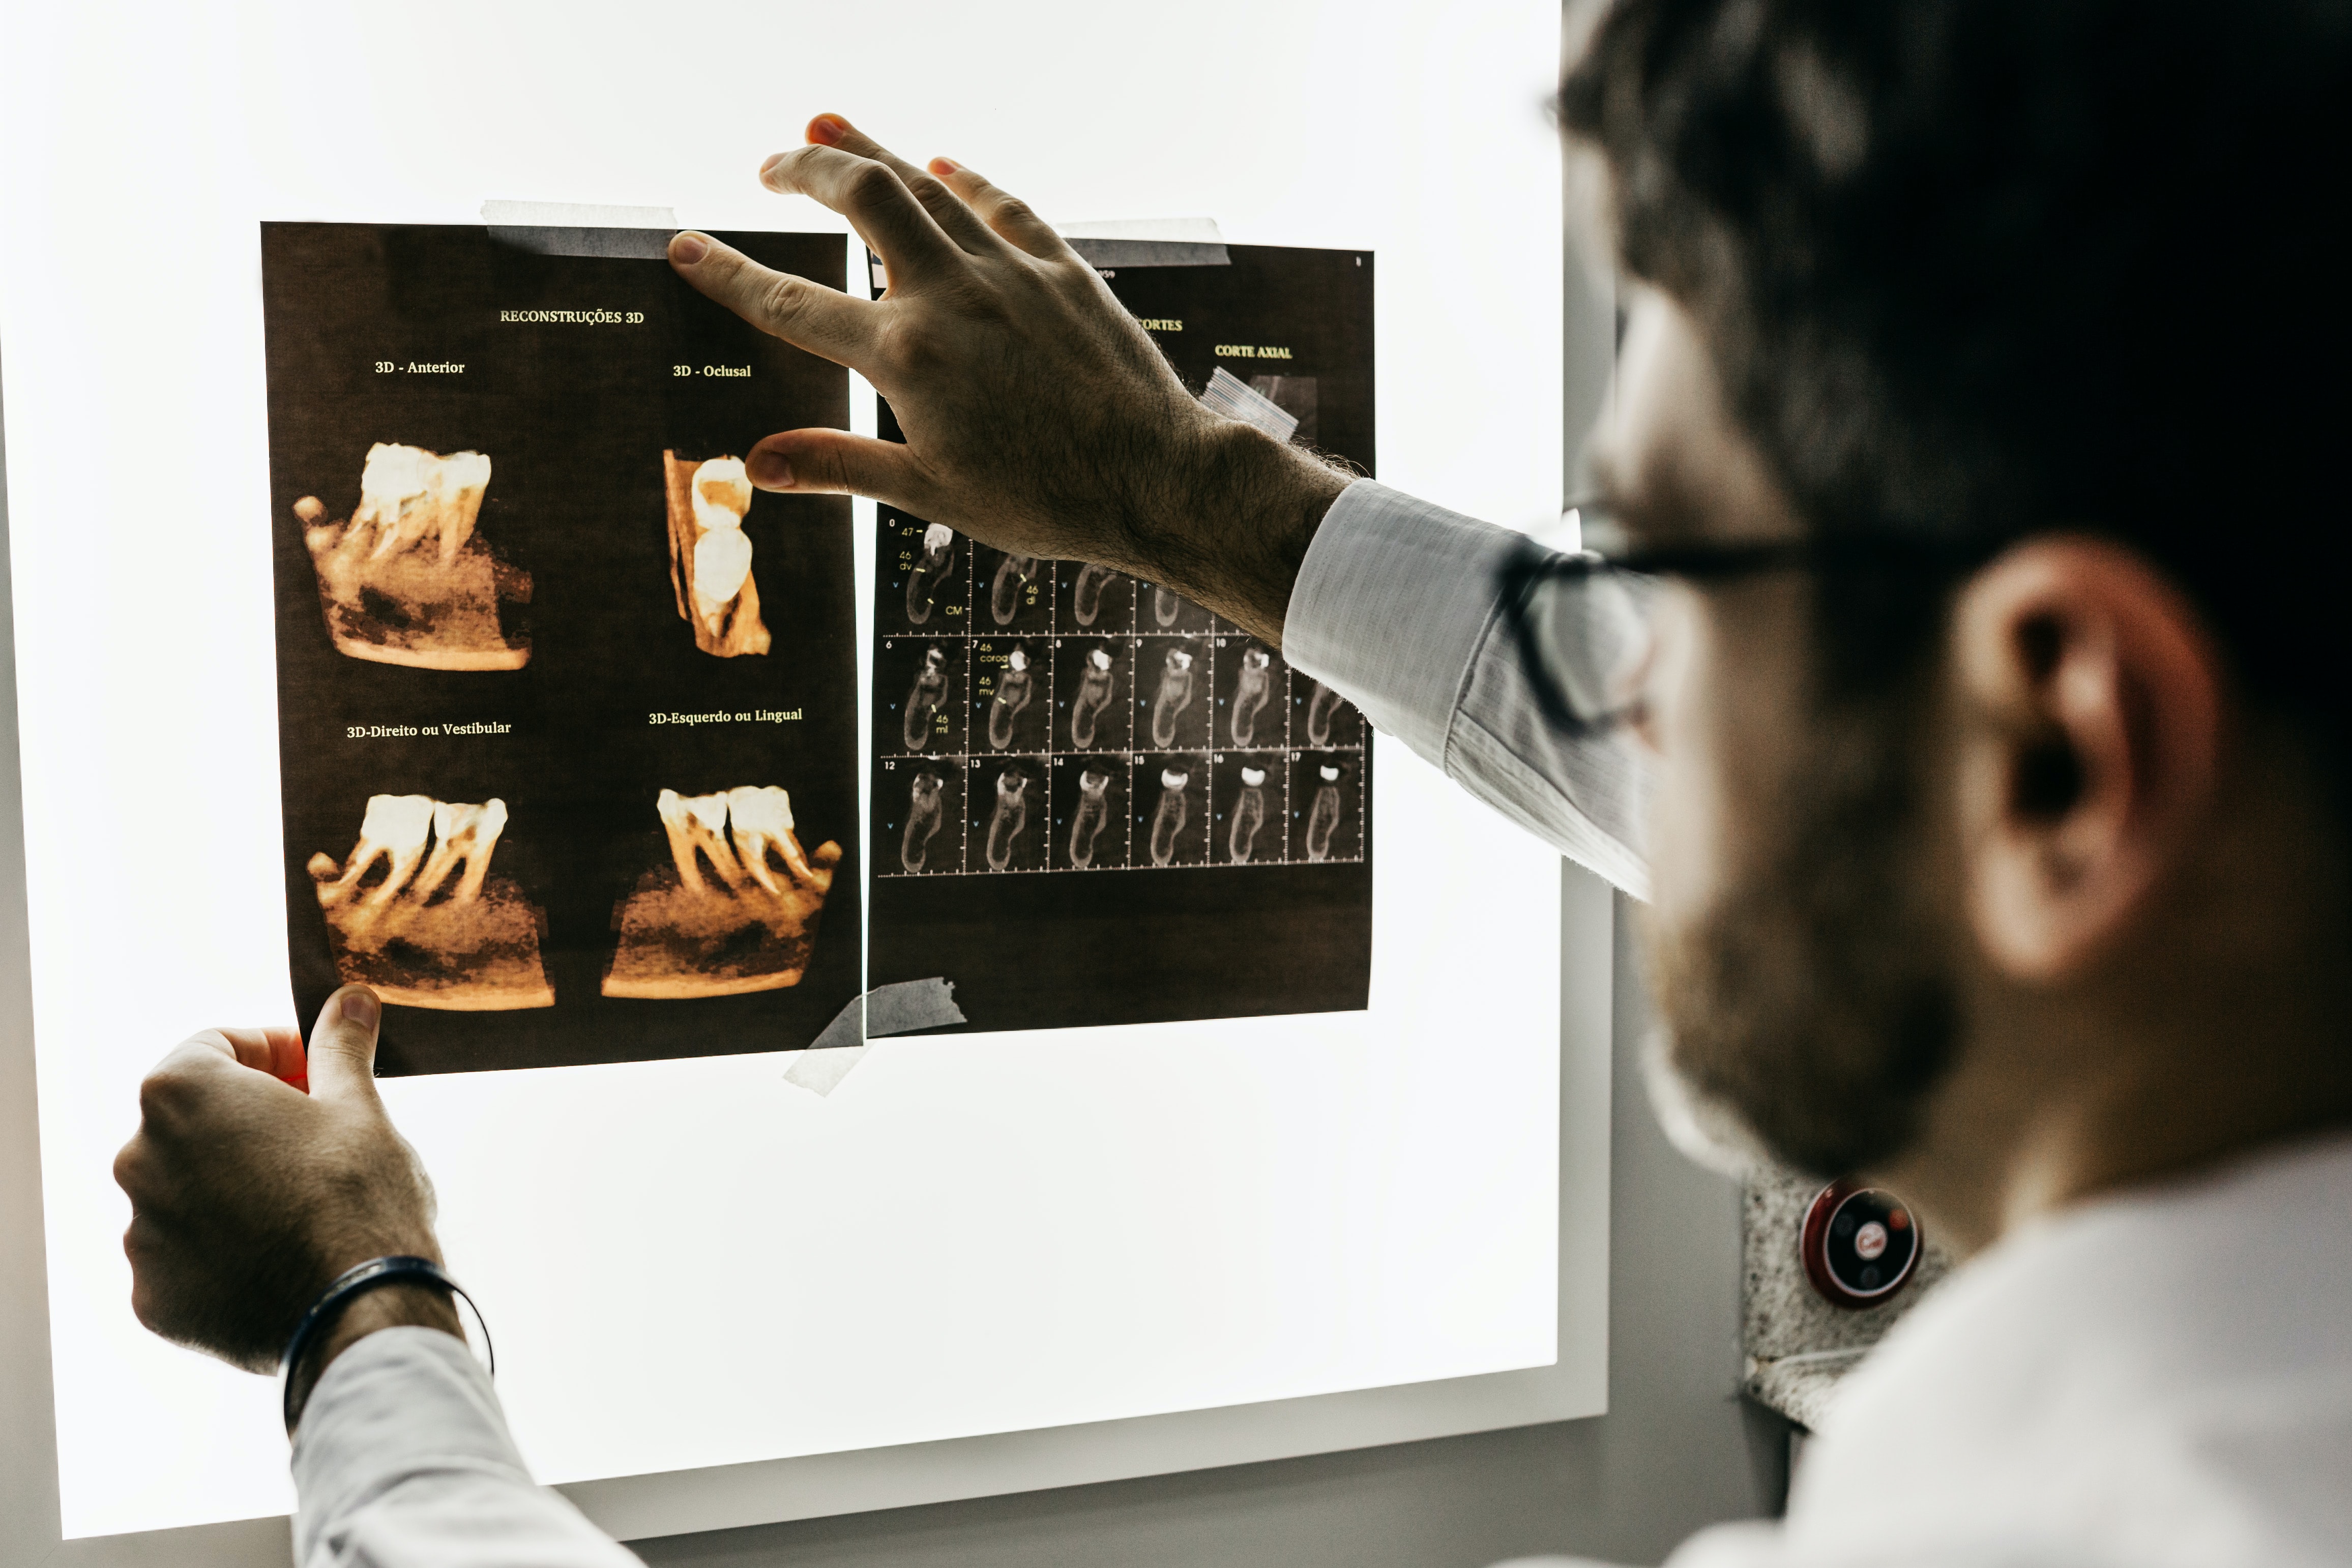 Foto de una persona observando unas radiografías de varias piezas dentales.